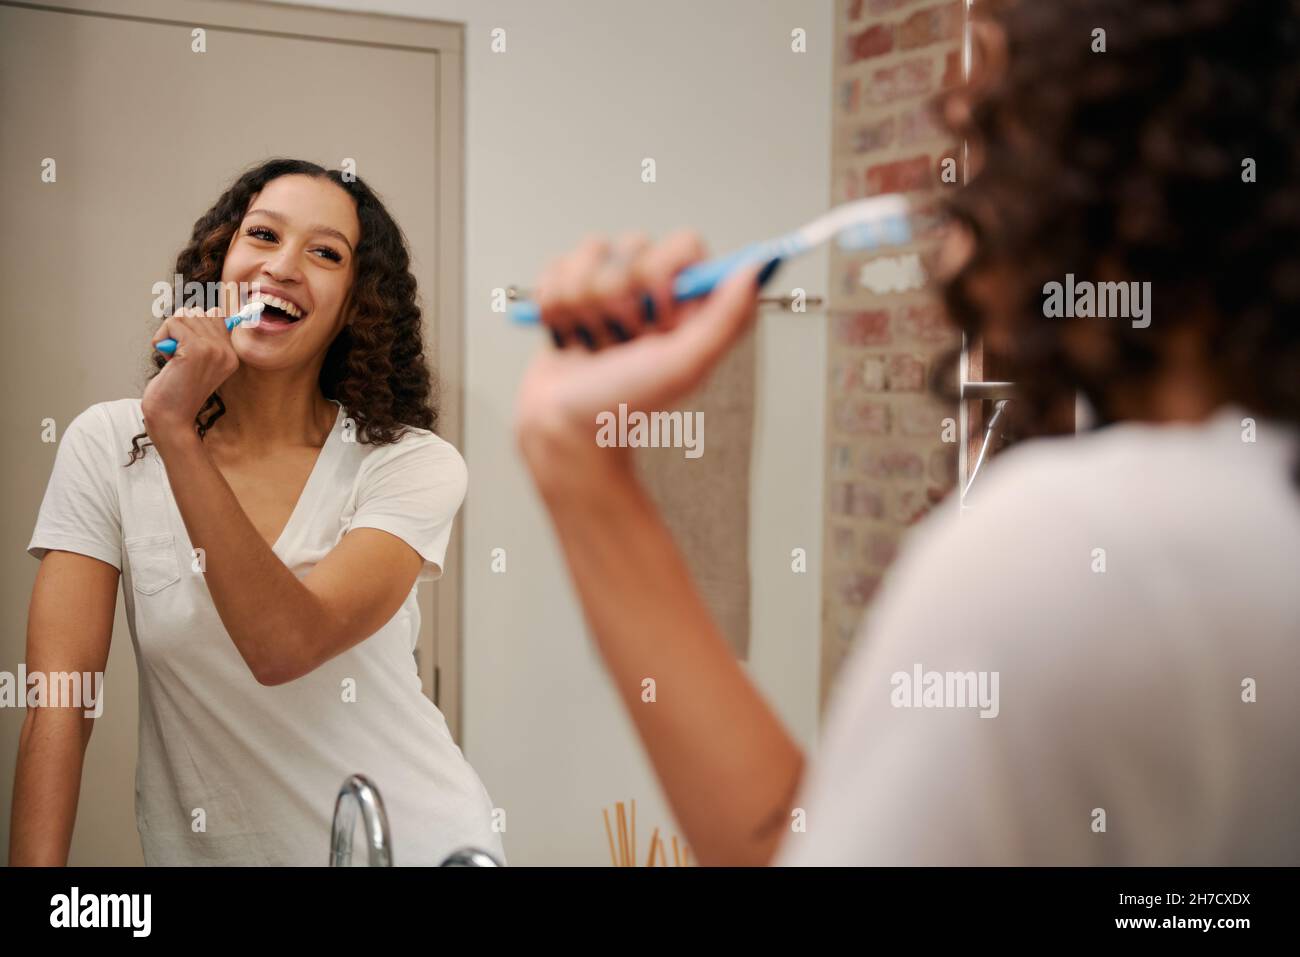 Gesunde multikulturelle junge Frau, die im Badezimmer als Mikrofon in die Zahnbürste singt. Glücklich, tanzen im modernen Badezimmer. Stockfoto